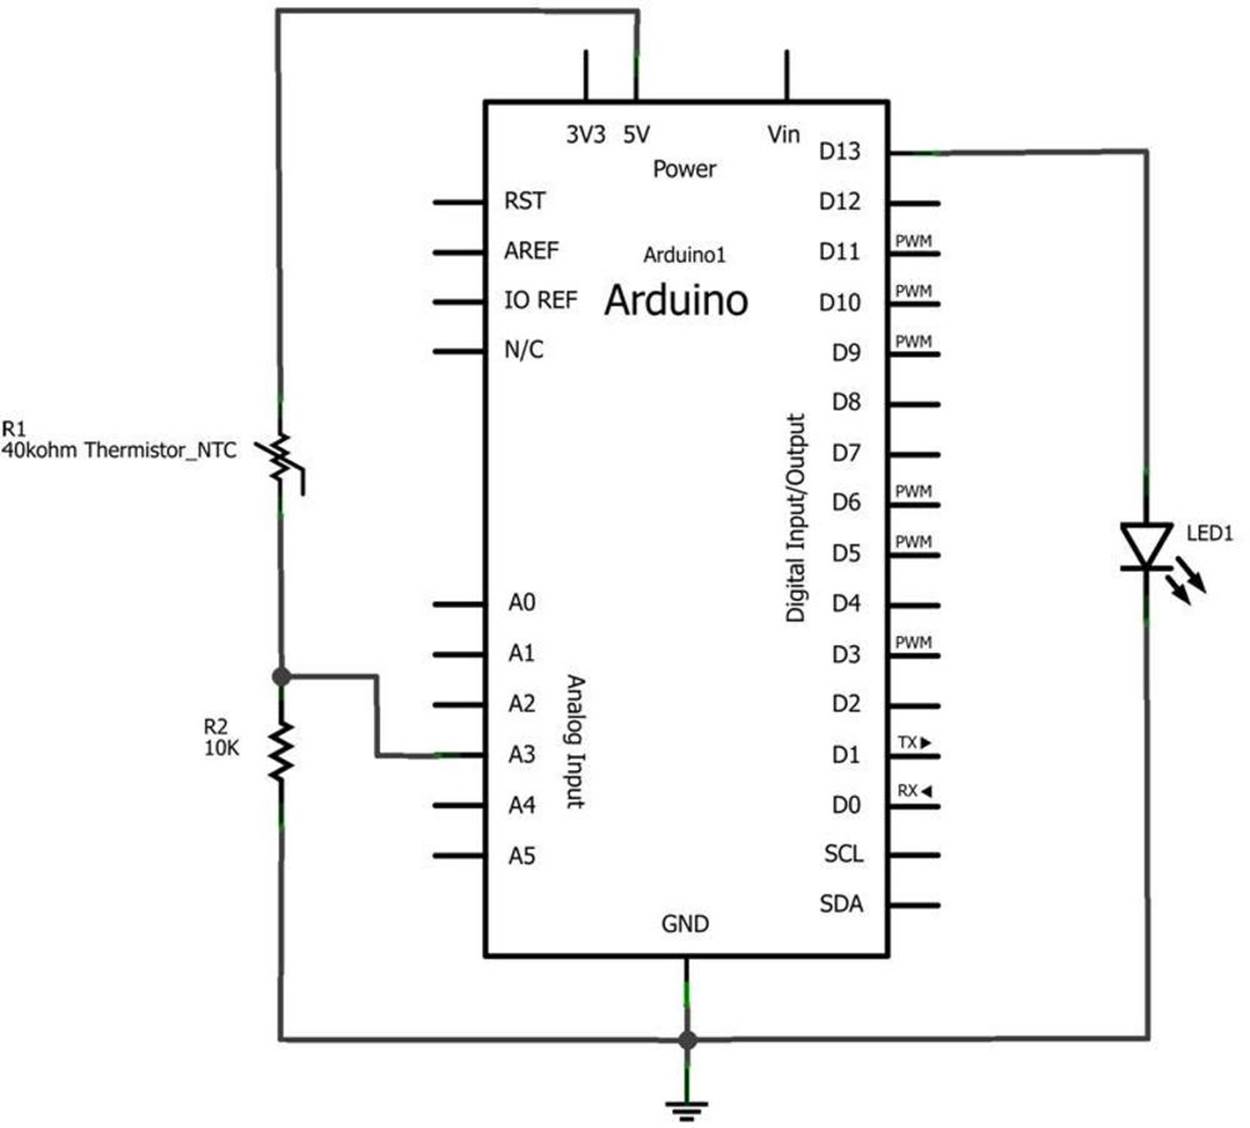 The Temperature Indicator Fritzing circuit schematic diagram